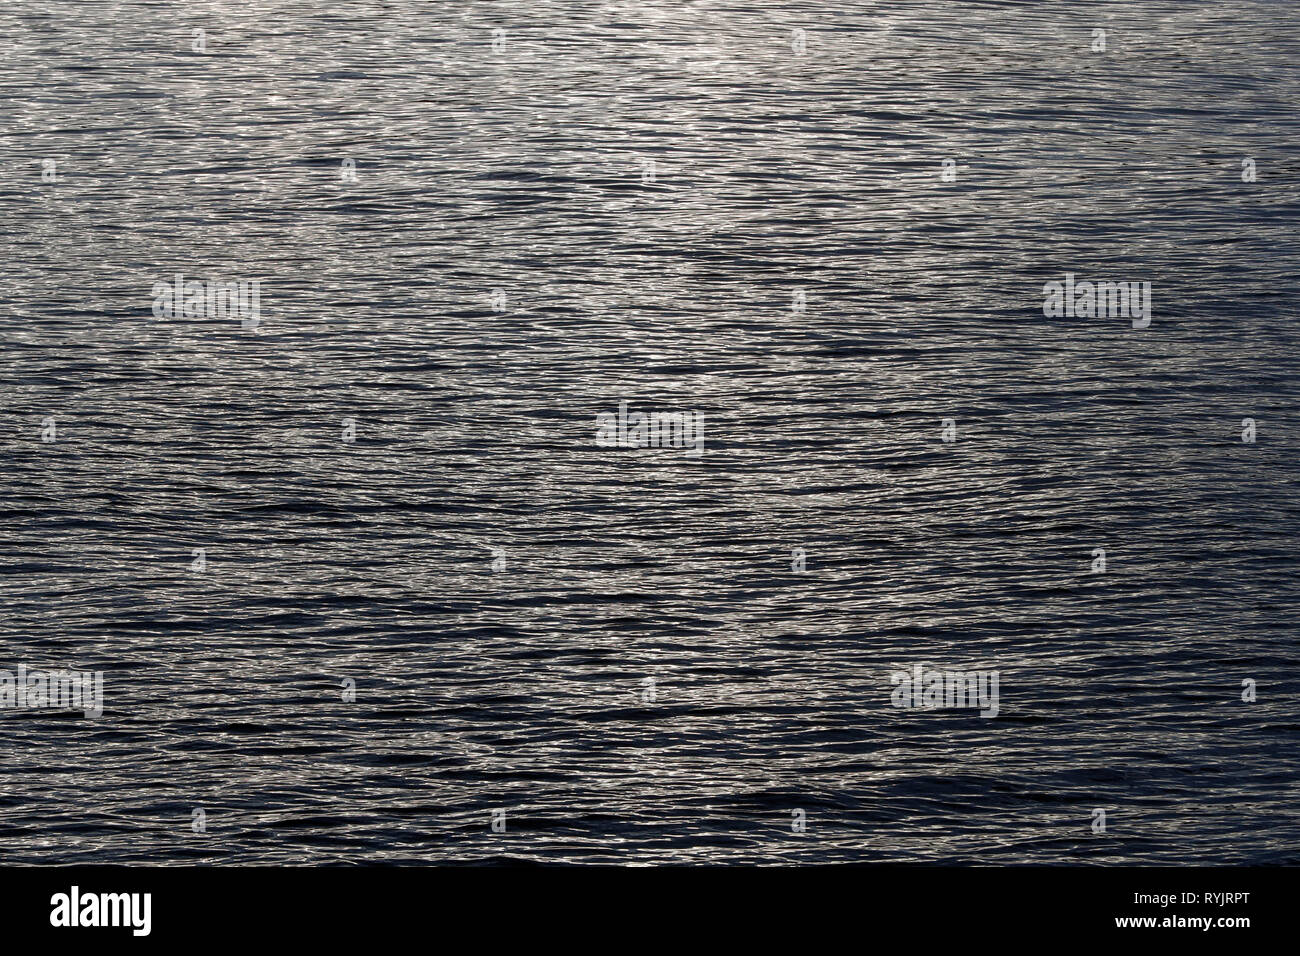 Wasser Oberfläche mit Wellen Textur Hintergrund, gesehen von oben in Schwarz und Weiß. Norwegen. Stockfoto